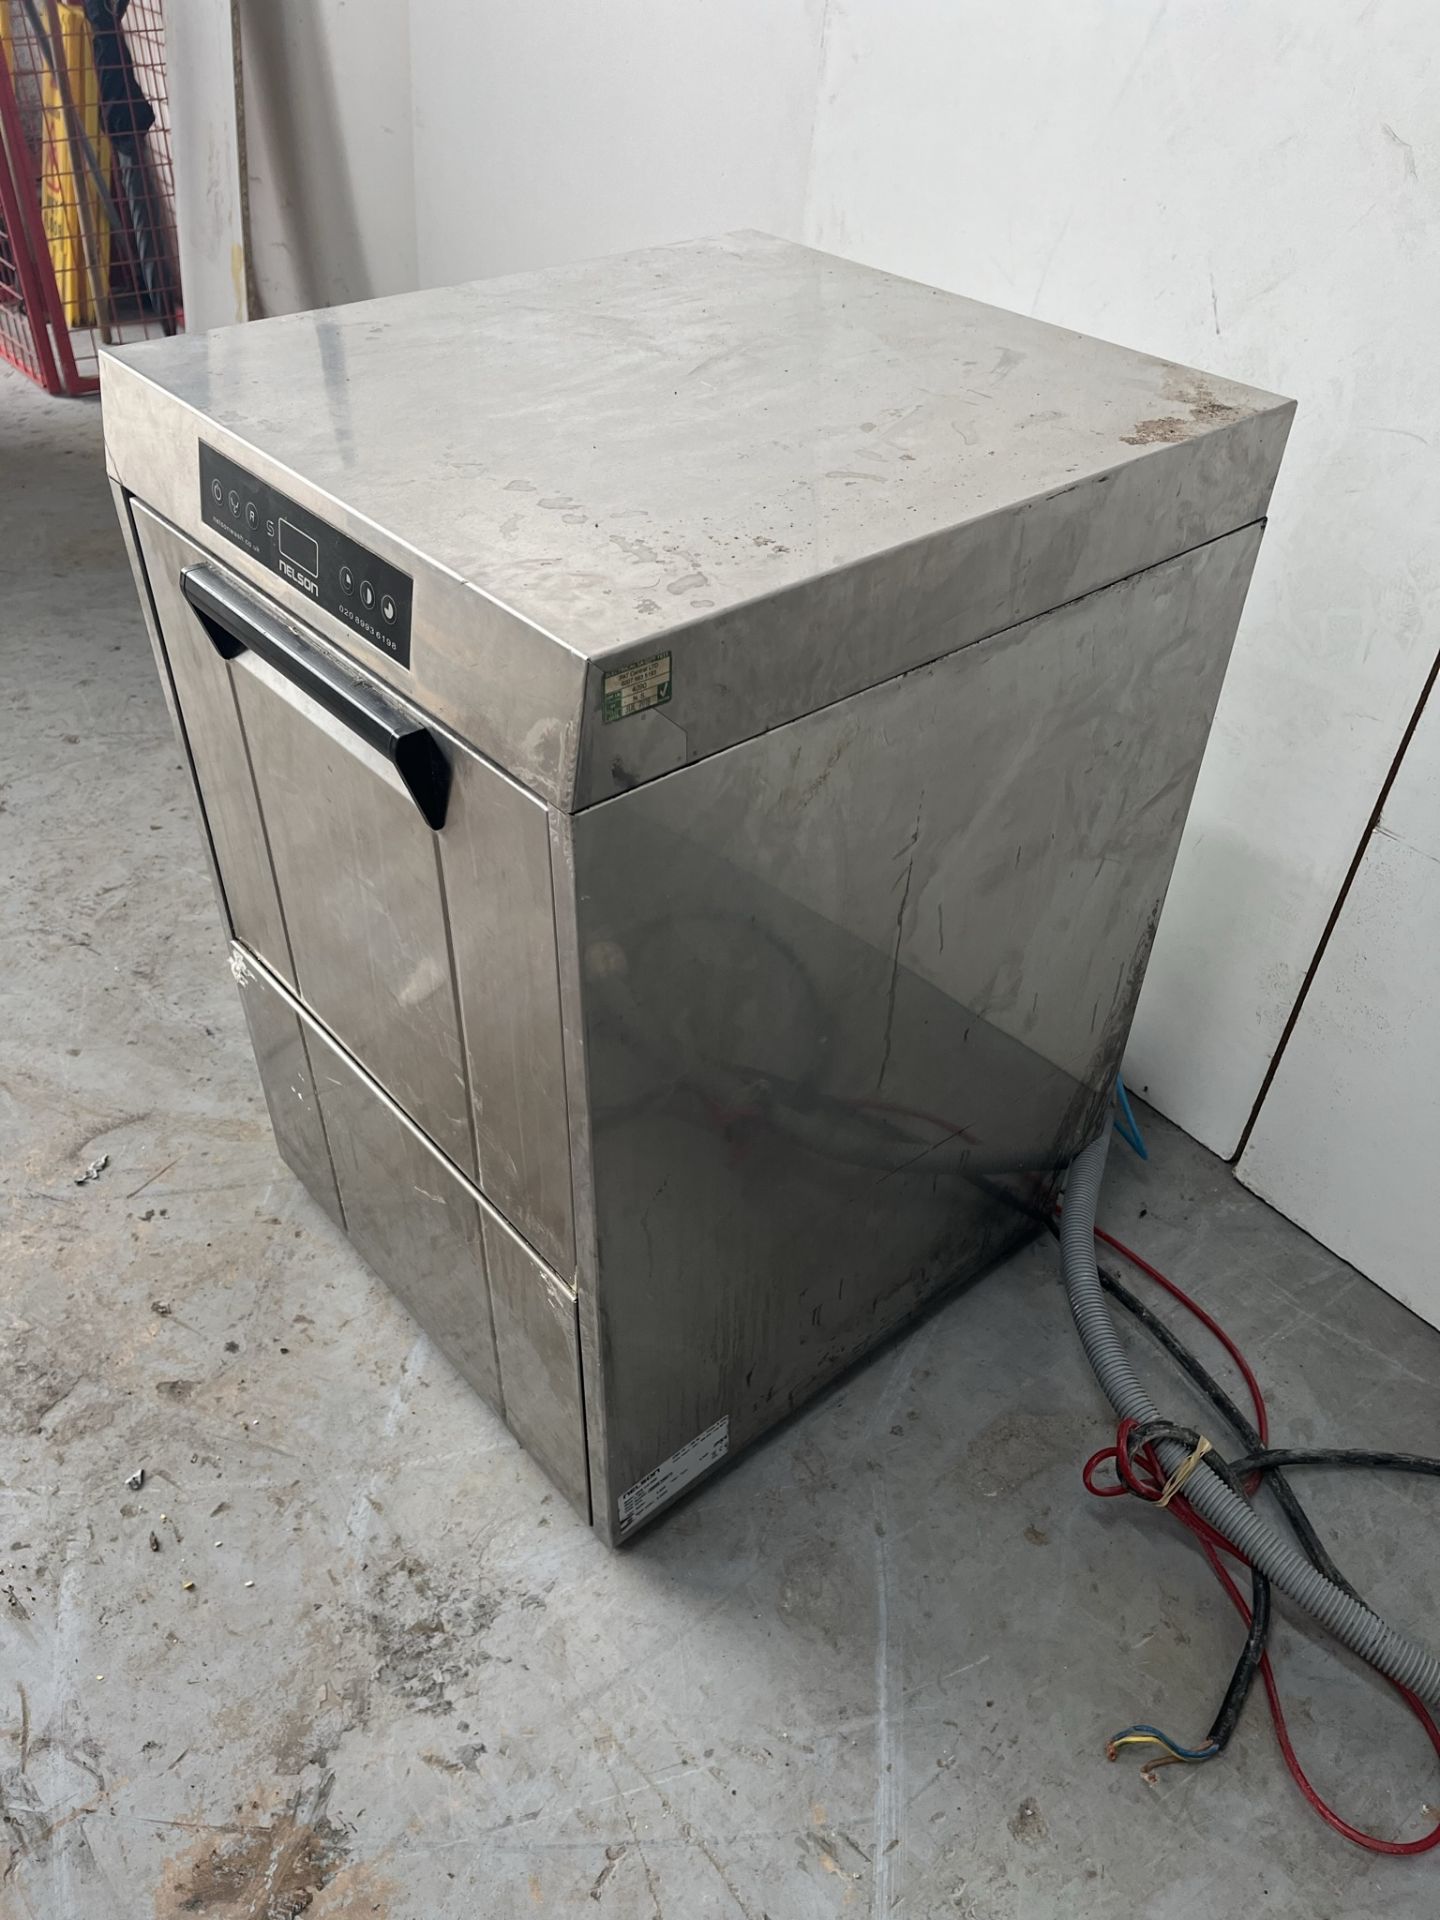 Nelson NWG410MSD Professional Dishwasher - Image 3 of 10